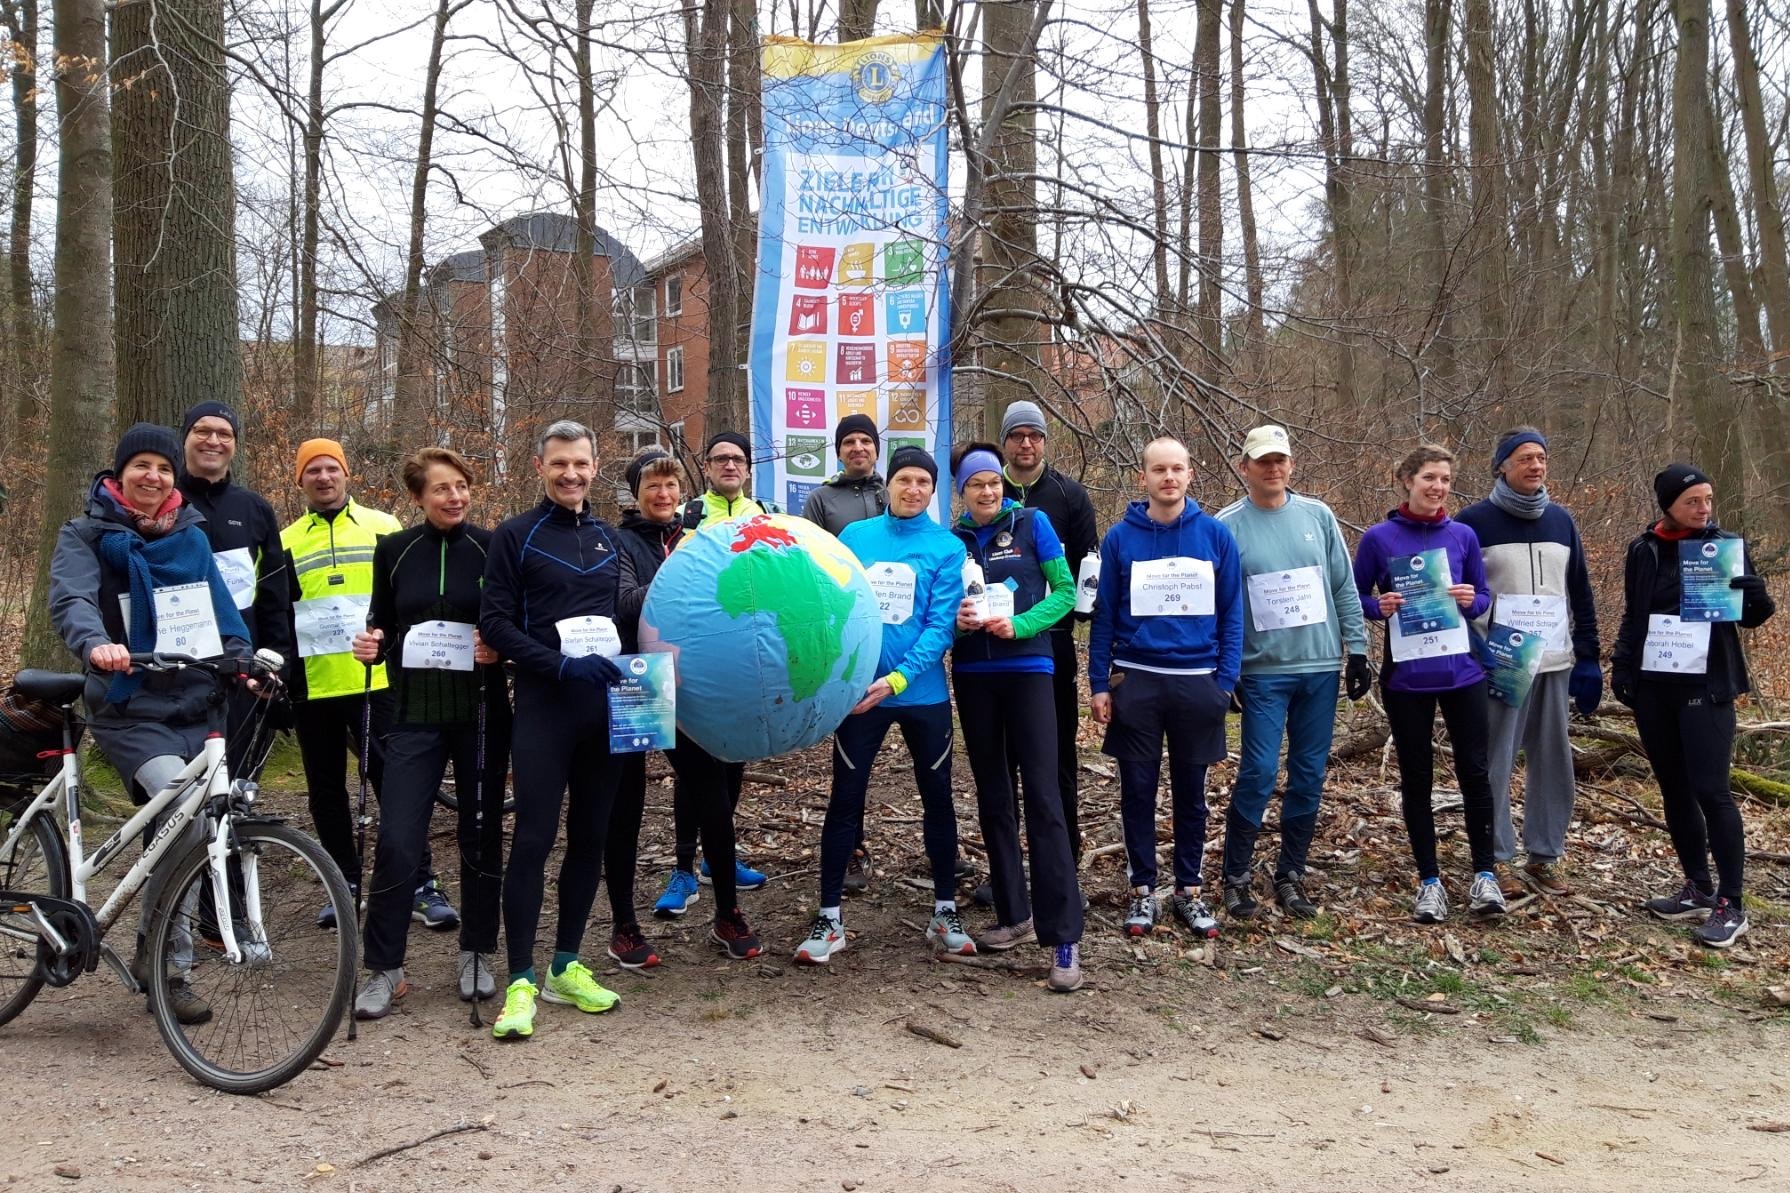 Mitglieder des Lions Club Lüneburg-Ilmenau treffen sich im Wald zum gemeinsamen Lauf. Für das Foto halten Sie eine große Weltkugel, einen Wasserball in die Höhe.